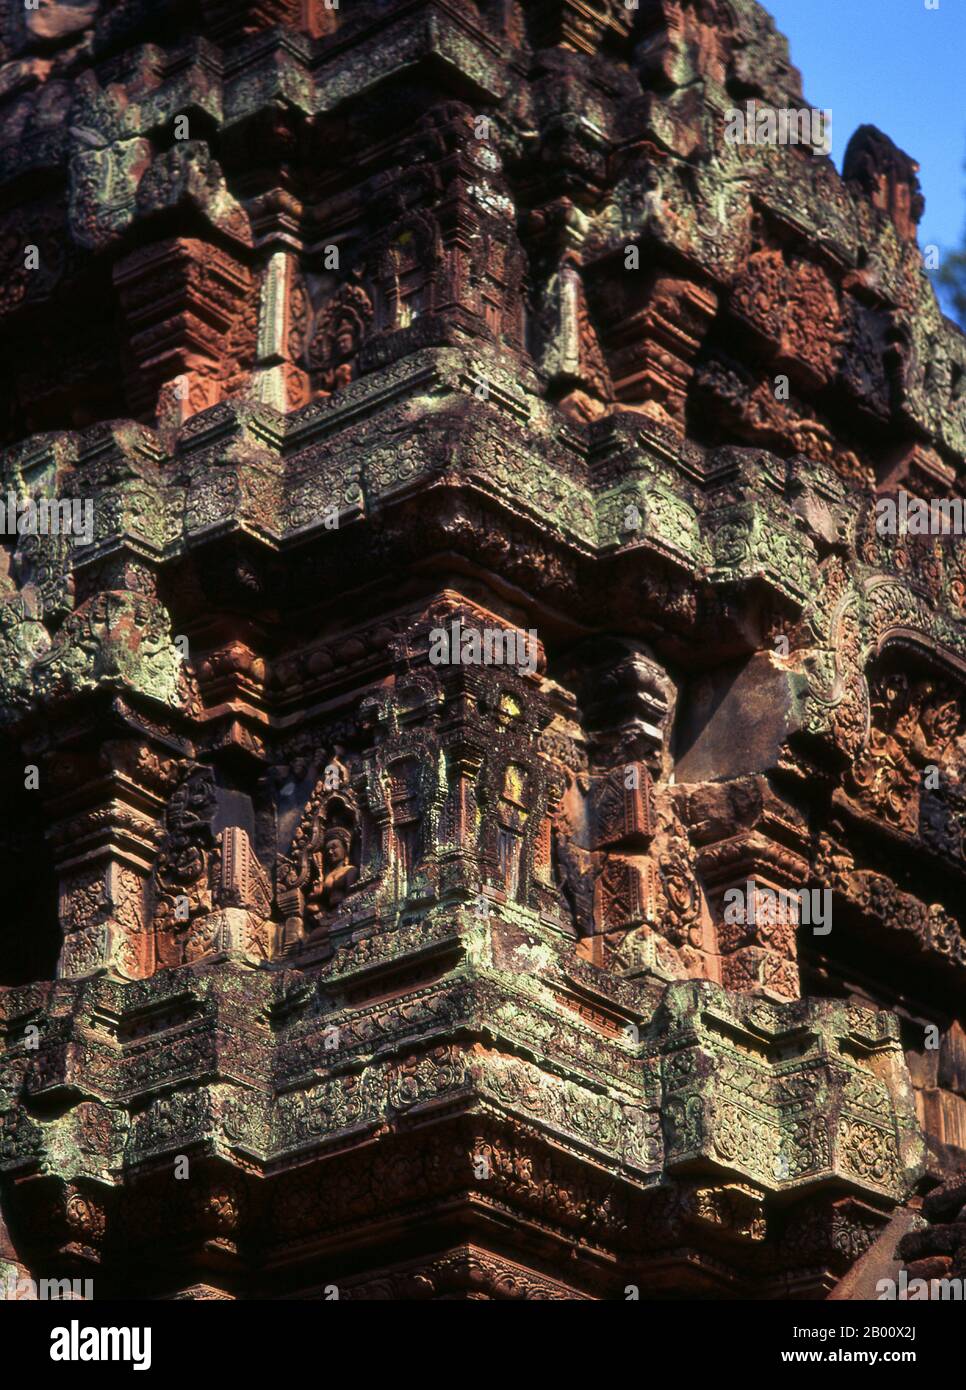 Kambodscha: Zentralschrein, Banteay Srei (Zitadelle der Frauen), bei Angkor. Banteay Srei (oder Banteay Srey) ist ein kambodschanischer Tempel aus dem 10. Jahrhundert, der dem Hindu-gott Shiva gewidmet ist und im Nordosten der Hauptgruppe von Tempeln in Angkor liegt. Banteay Srei ist weitgehend aus rotem Sandstein gebaut, ein Medium, das sich für die aufwendigen dekorativen Wandschnitzereien eignet, die noch heute zu beobachten sind. Banteay Srei wird manchmal als das "Juwel der Khmer-Kunst" bezeichnet. Stockfoto